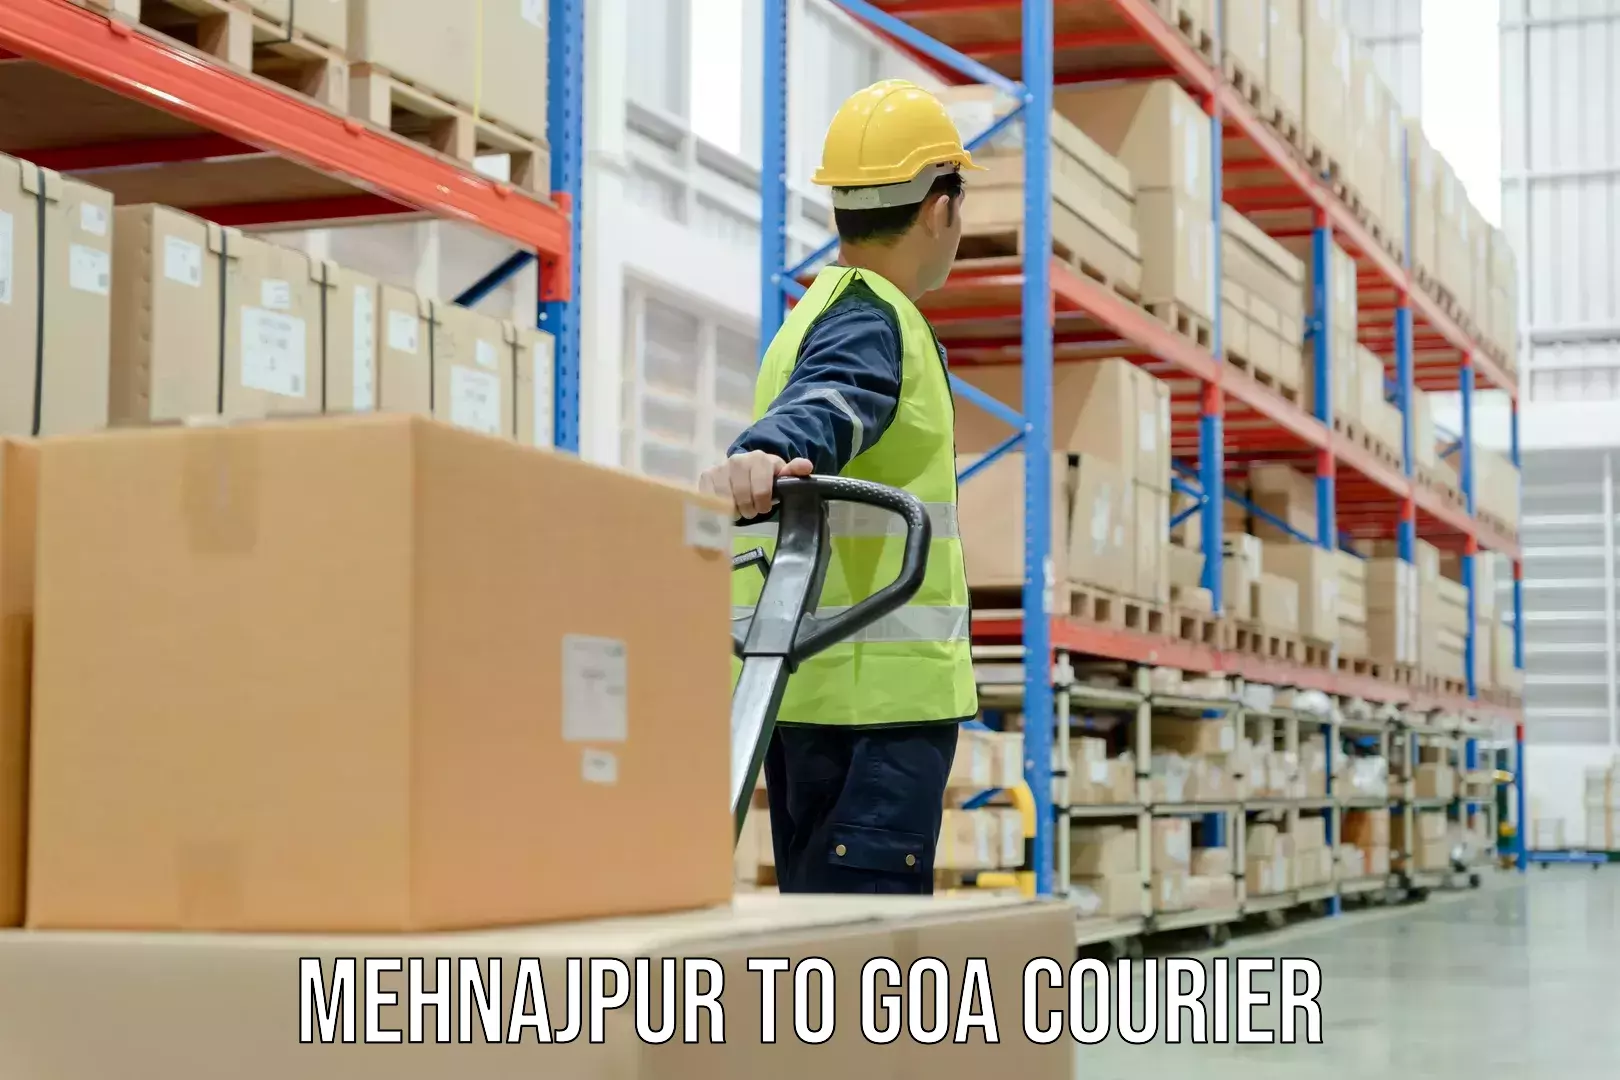 Premium courier solutions Mehnajpur to Mormugao Port